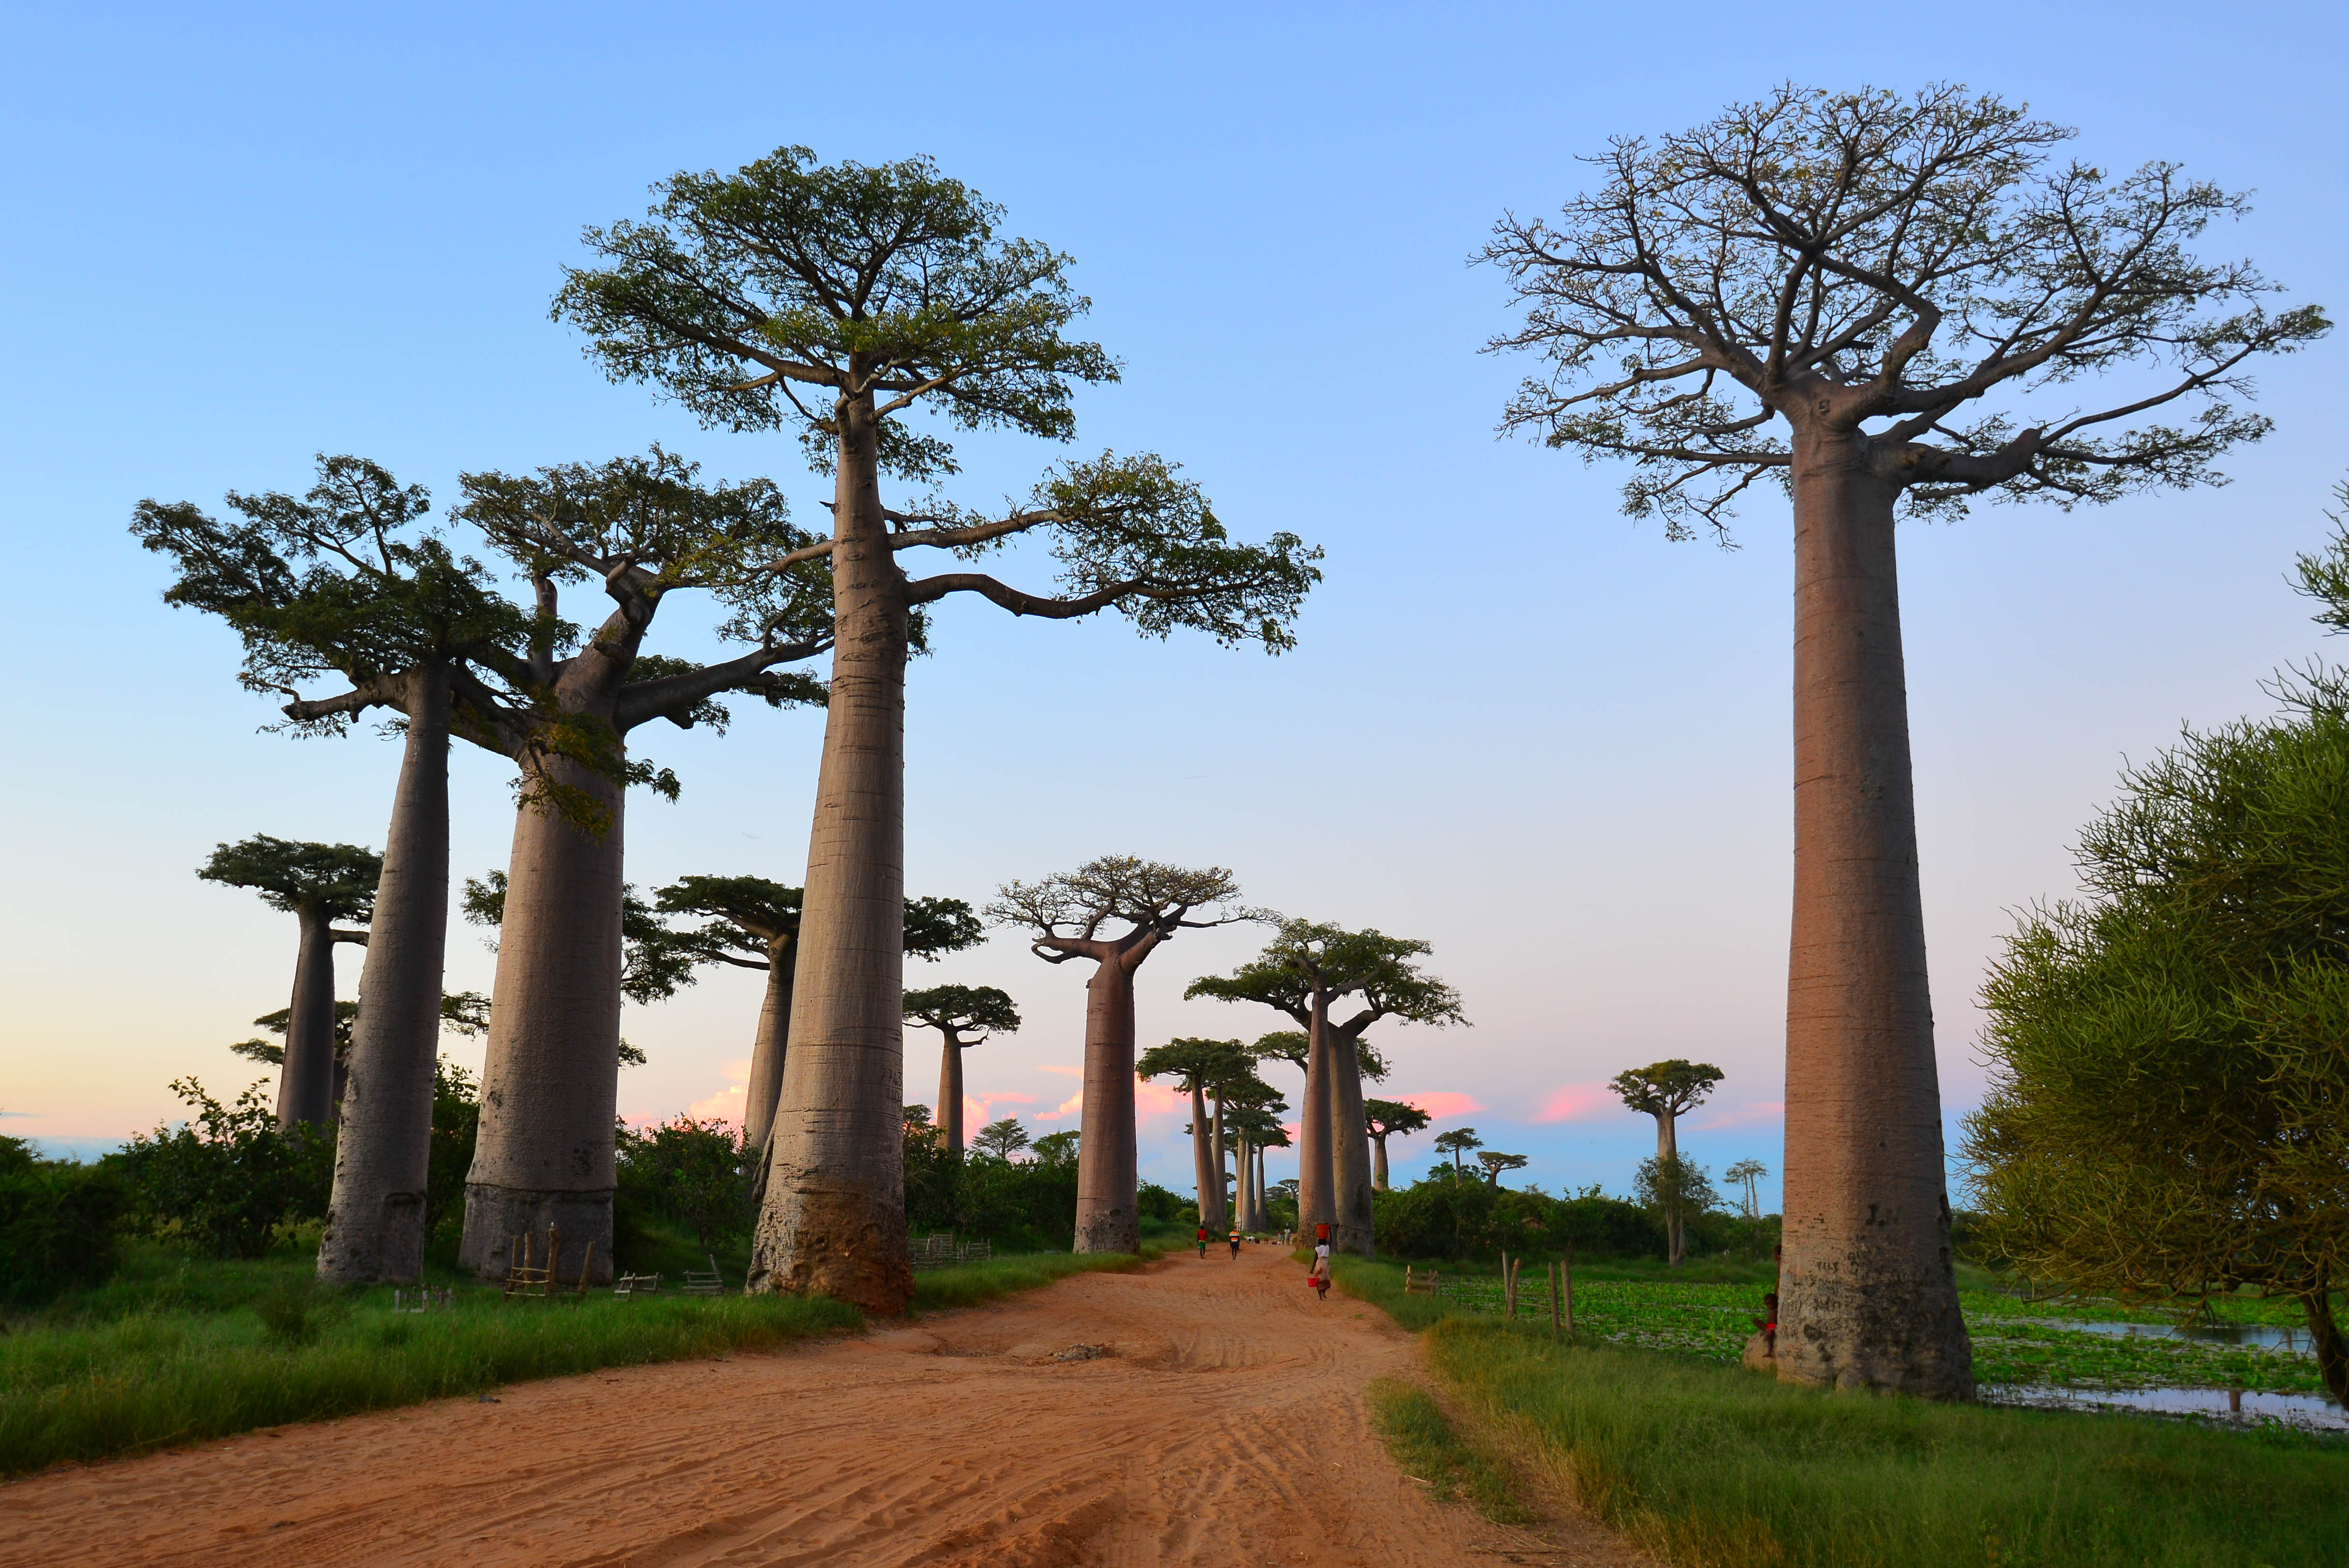 Ба баб. Аллея баобабов Мадагаскар. Мадагаскар, Морондава: аллея баобабо. Морондава Мадагаскар. Мадагаскар город Морондава дерево.